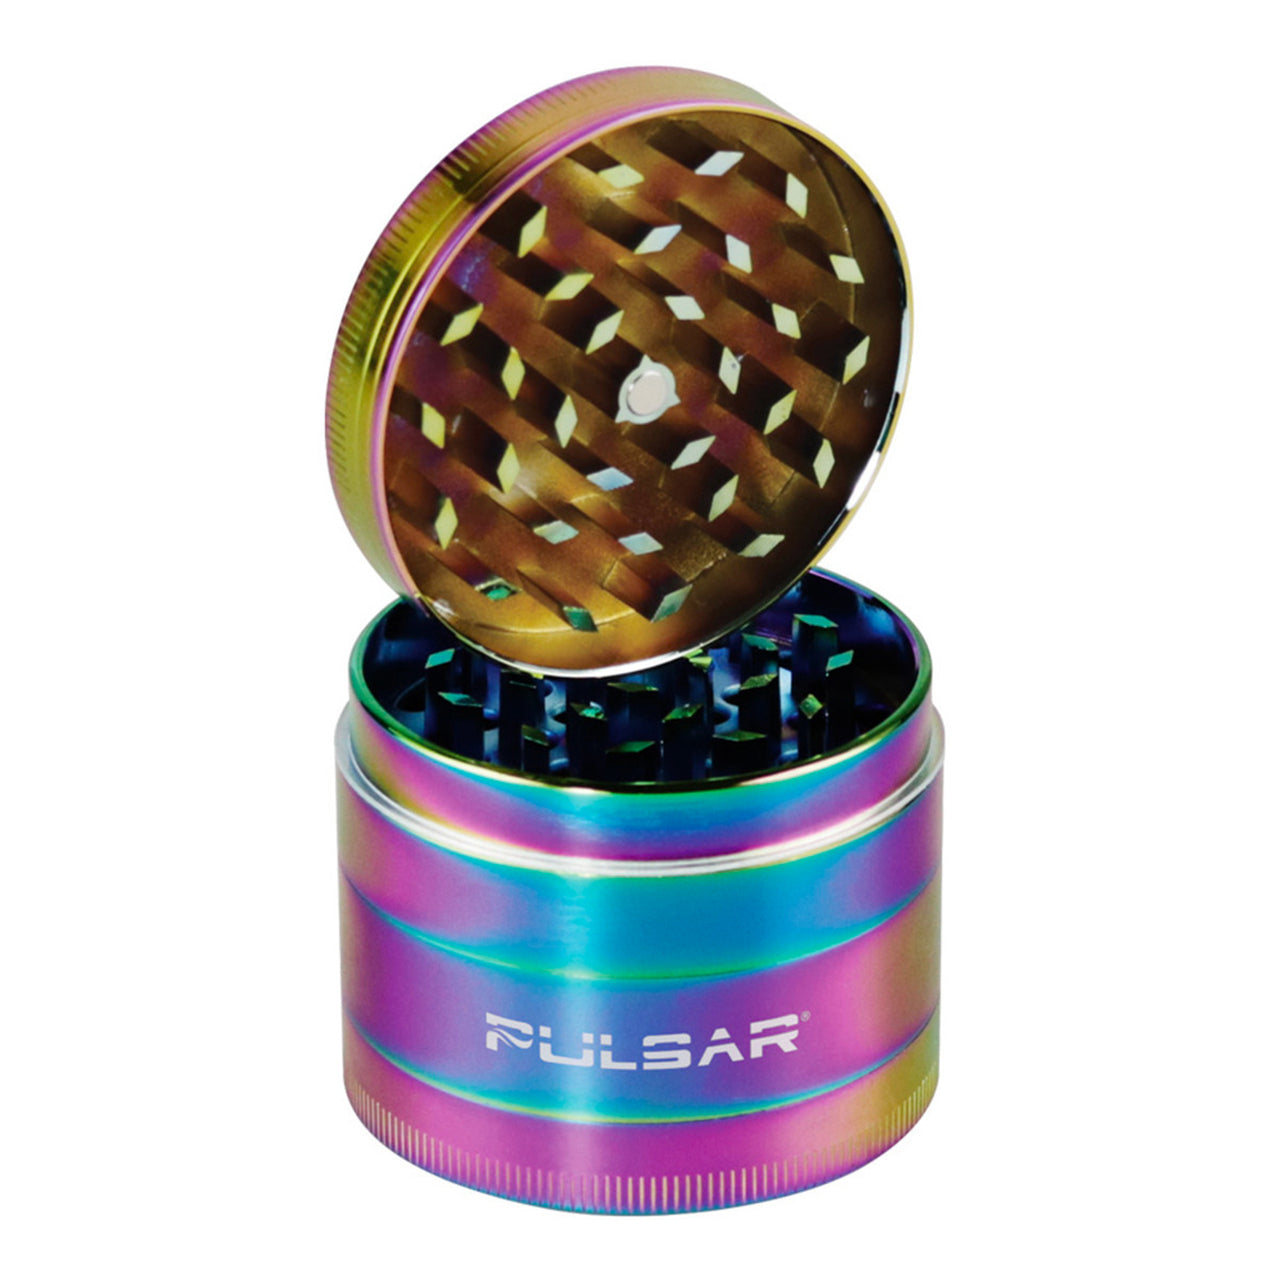 Pulsar 2.2" 4 Piece Grinder